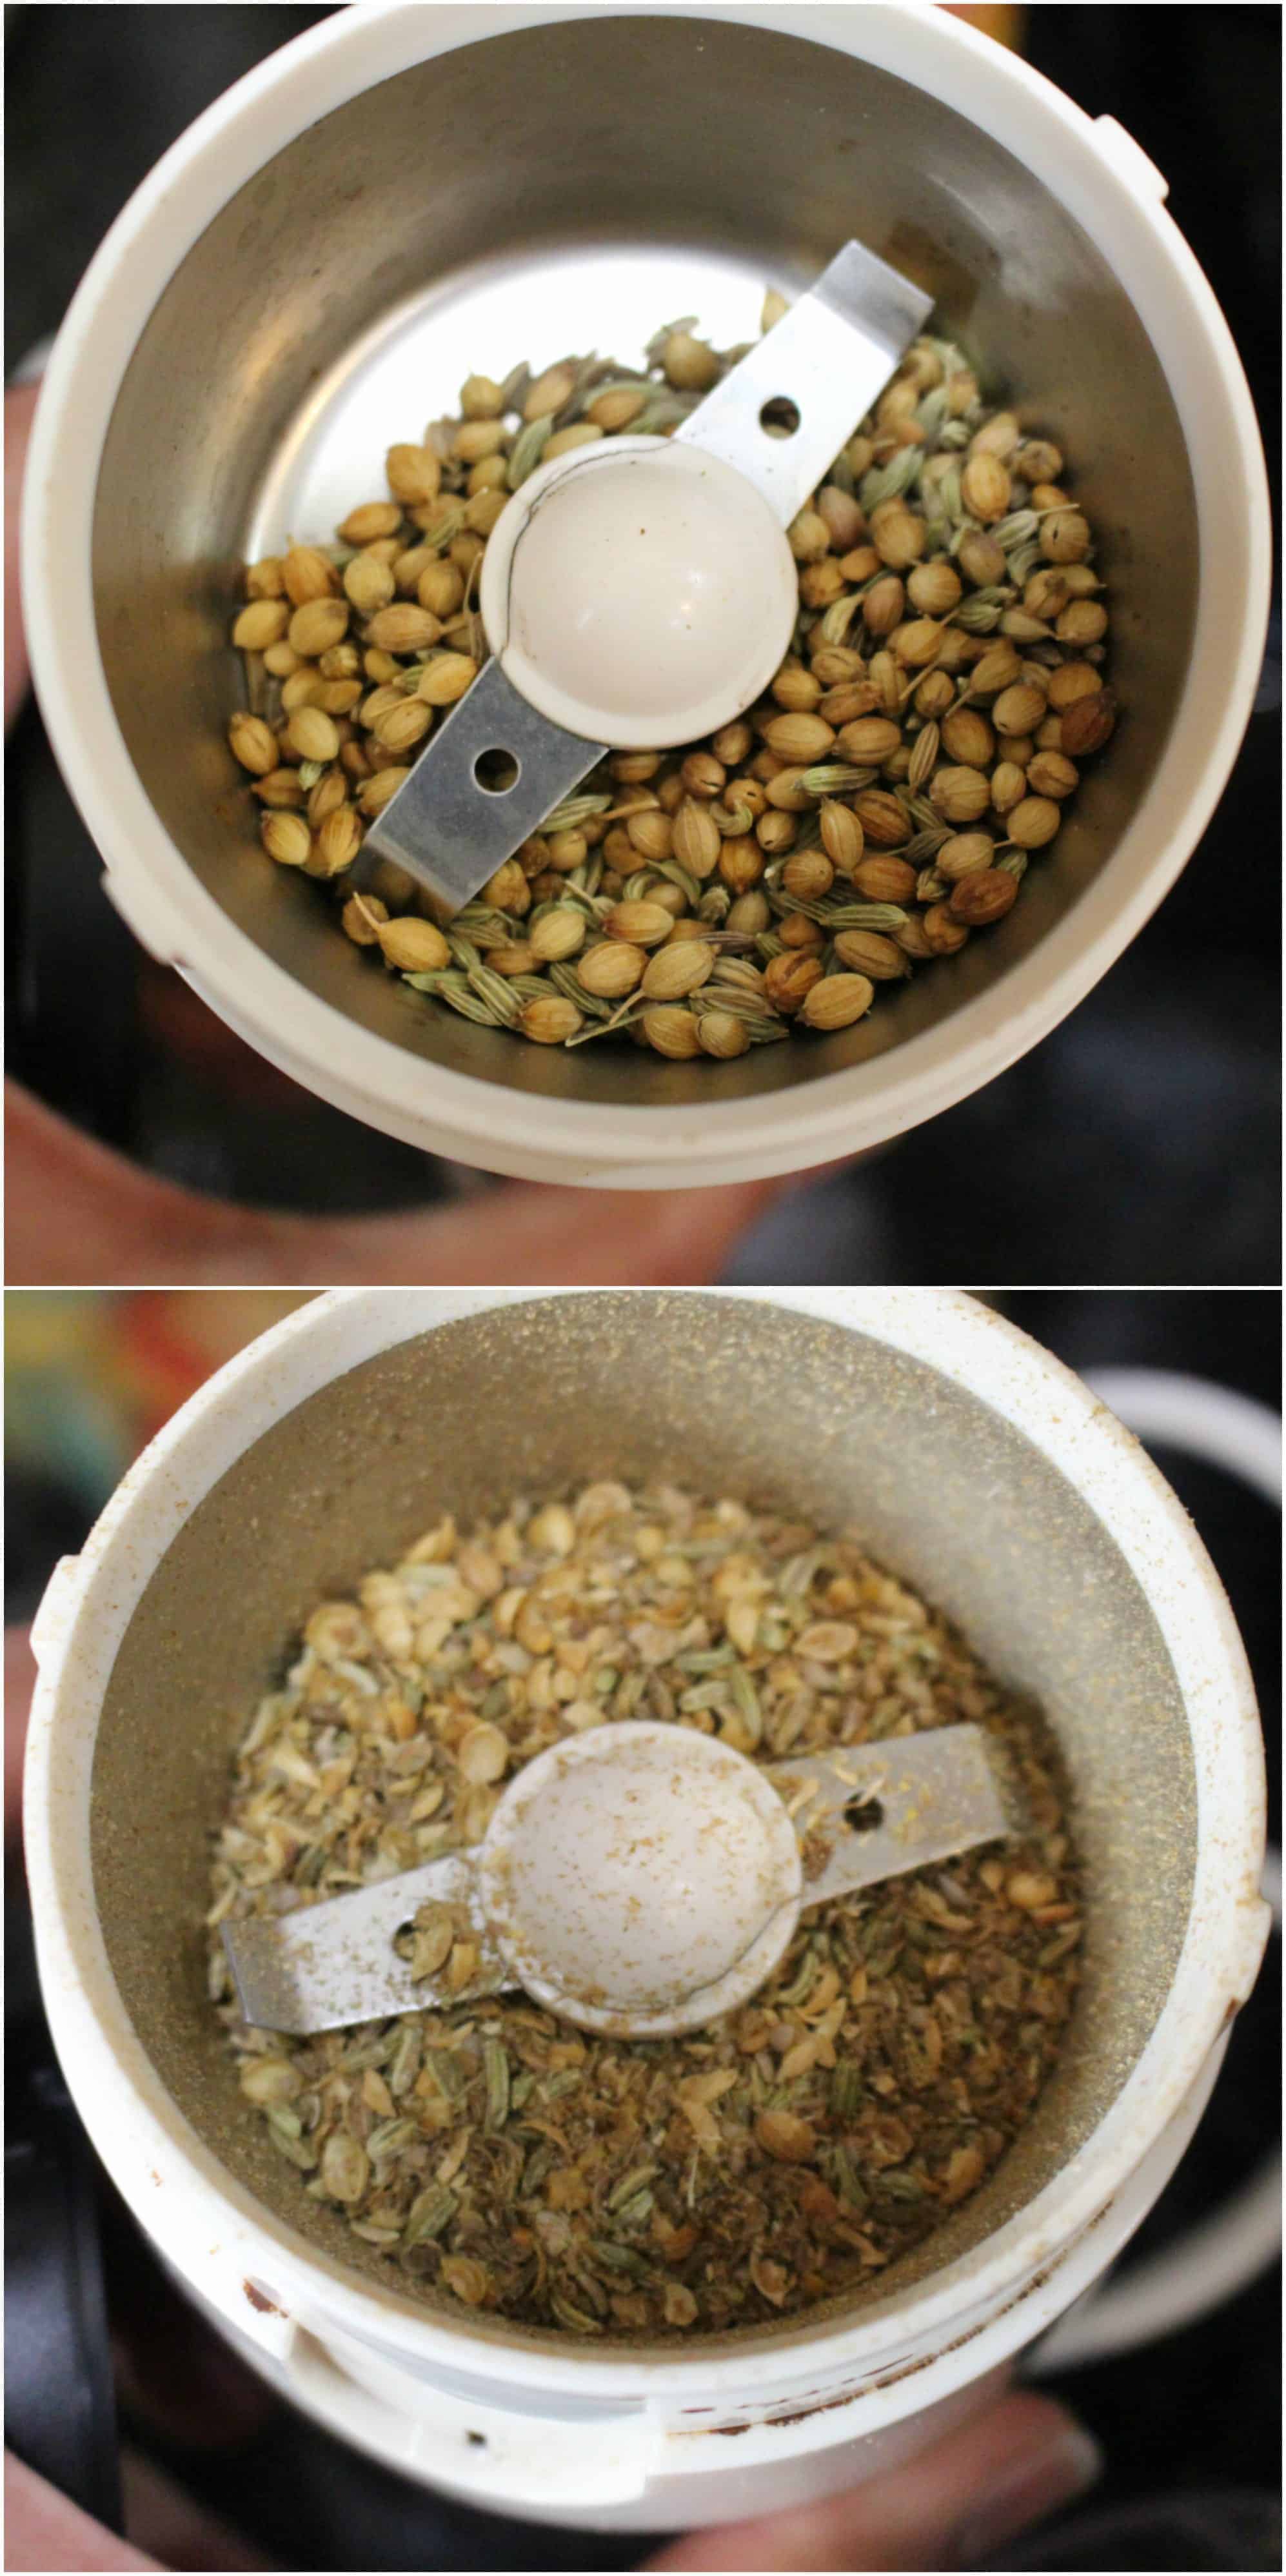 Grinding coriander seeds